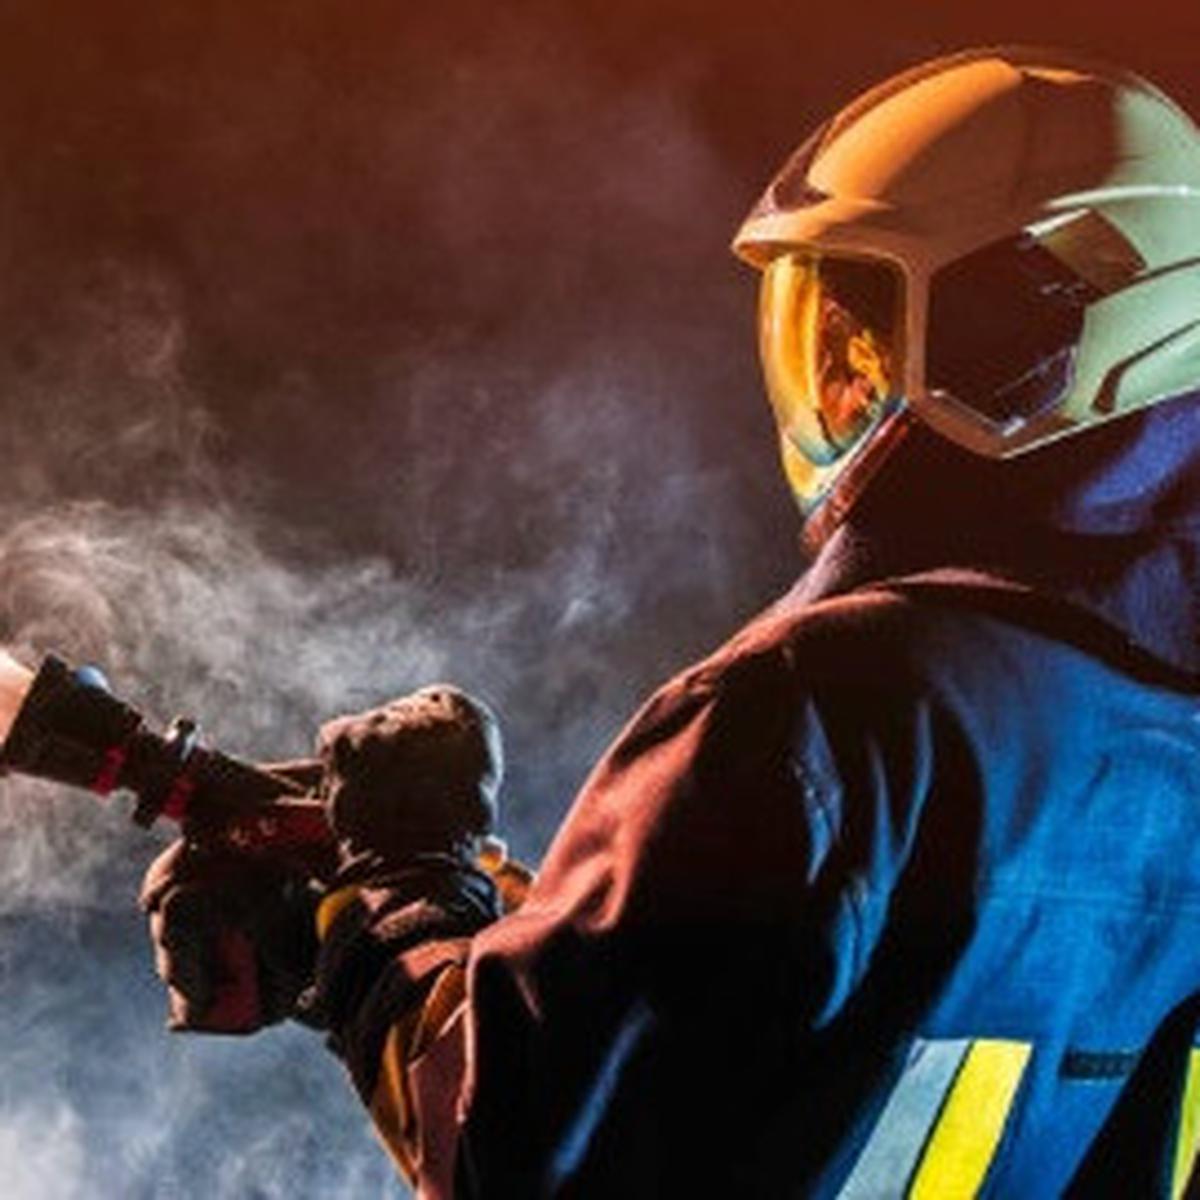 bagaimana caramu menghargai petugas pemadam kebakaran